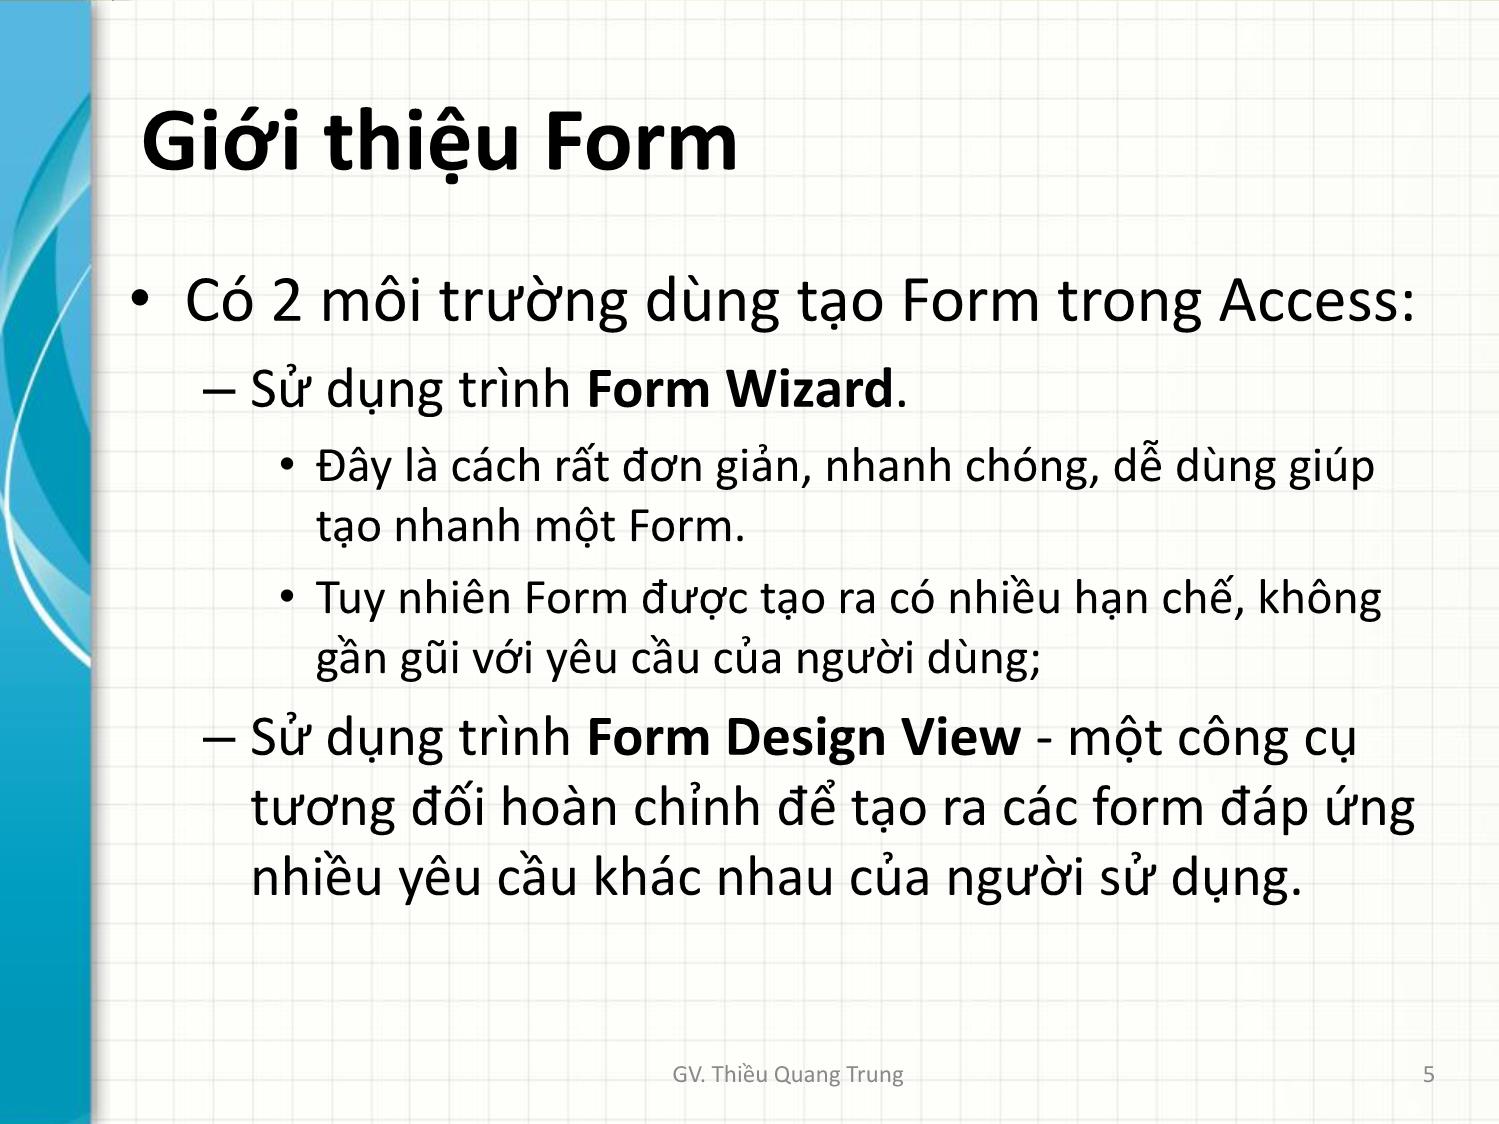 Bài giảng Tin học ứng dụng trong kinh doanh - Bài 4: Thiết kế mẫu biểu Forms - Thiều Quang Trung trang 5